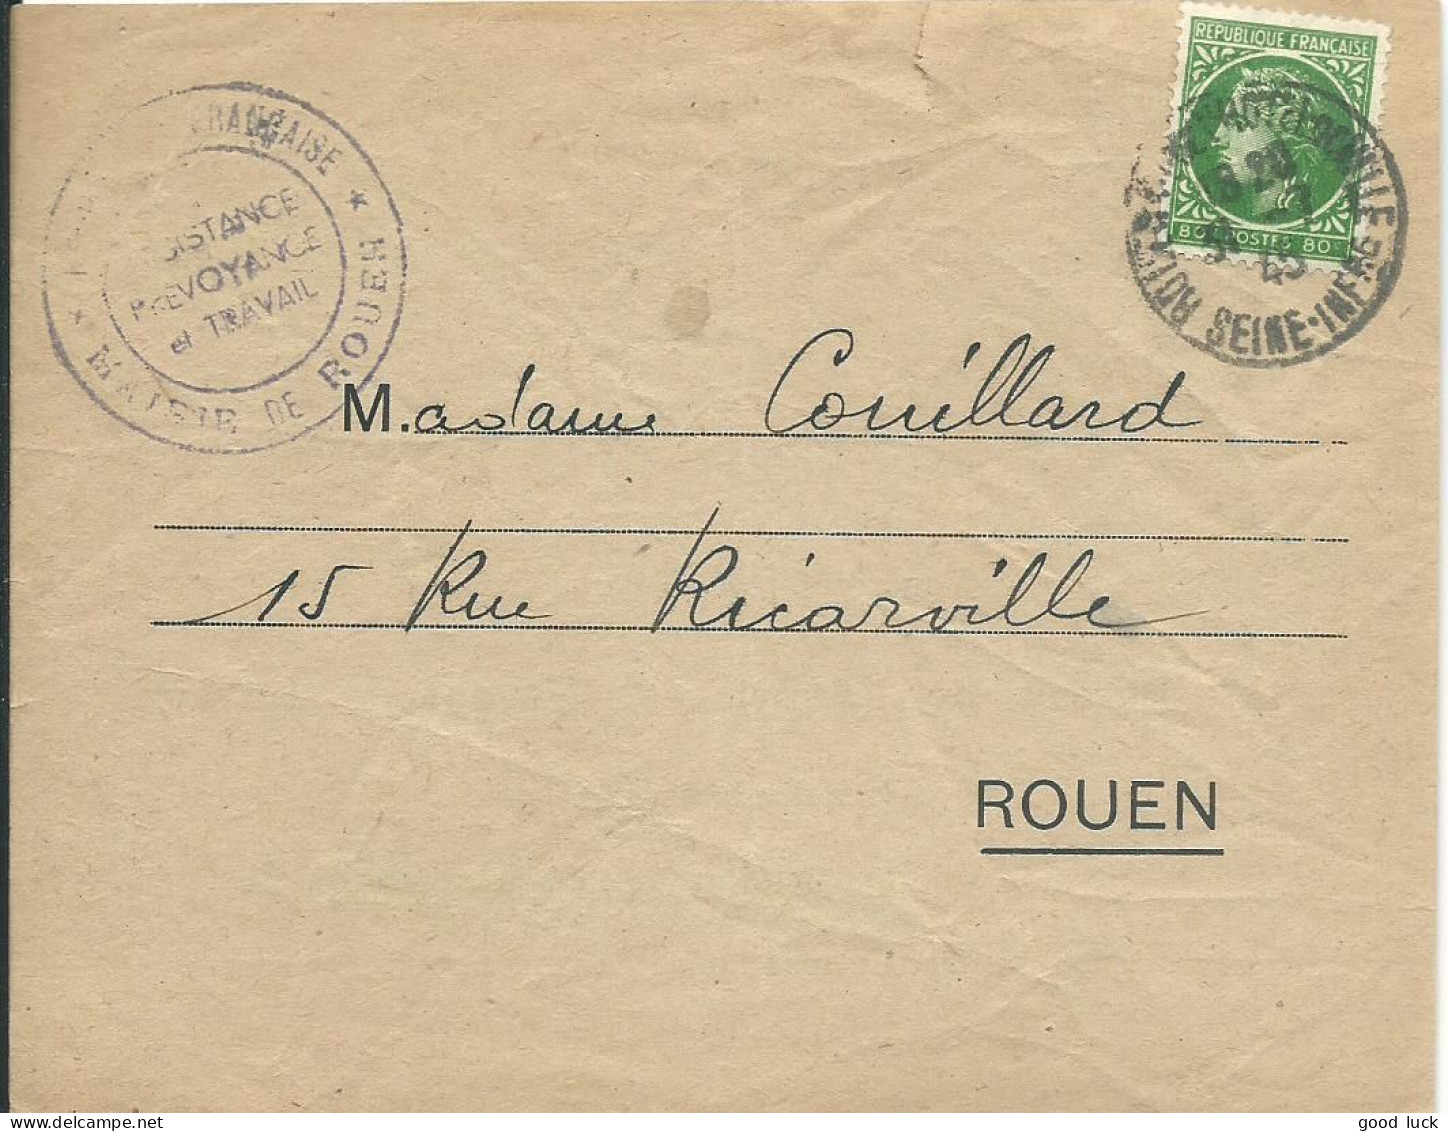 FRANCE LETTRE 80c MAIRIE DE ROUEN POUR ROUEN ( SEINE INFERIEURE ) DE 1945 LETTRE COVER - 1945-47 Cérès Van Mazelin